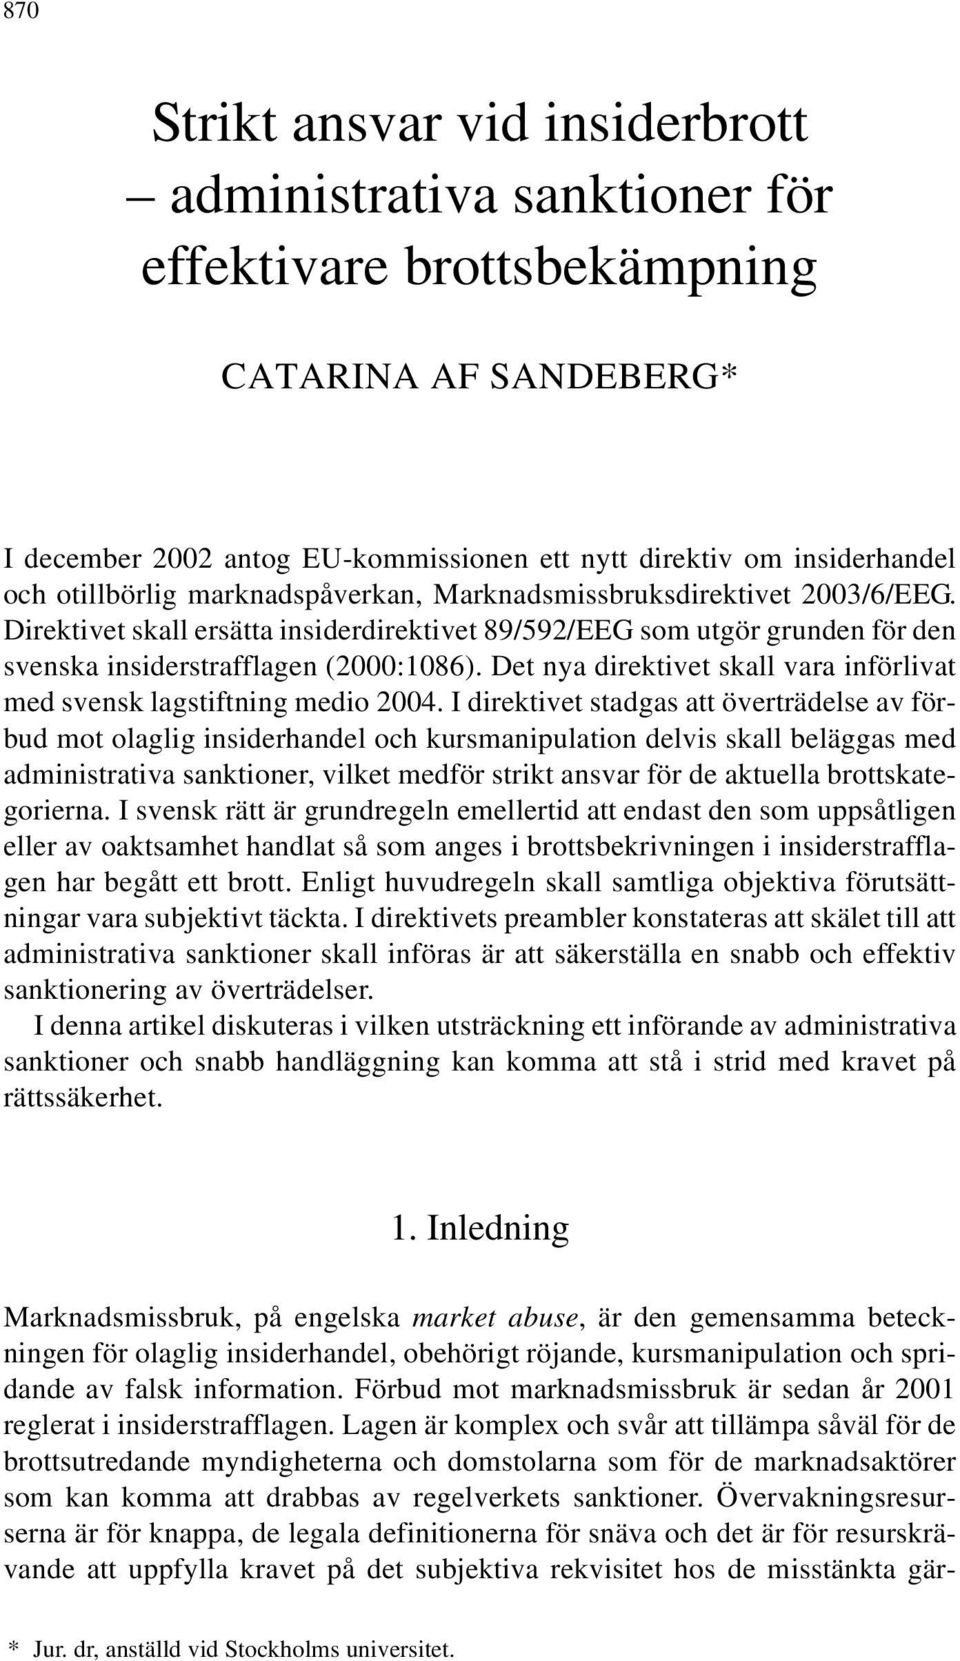 Direktivet skall ersätta insiderdirektivet 89/592/EEG som utgör grunden för den svenska insiderstrafflagen (2000:1086). Det nya direktivet skall vara införlivat med svensk lagstiftning medio 2004.